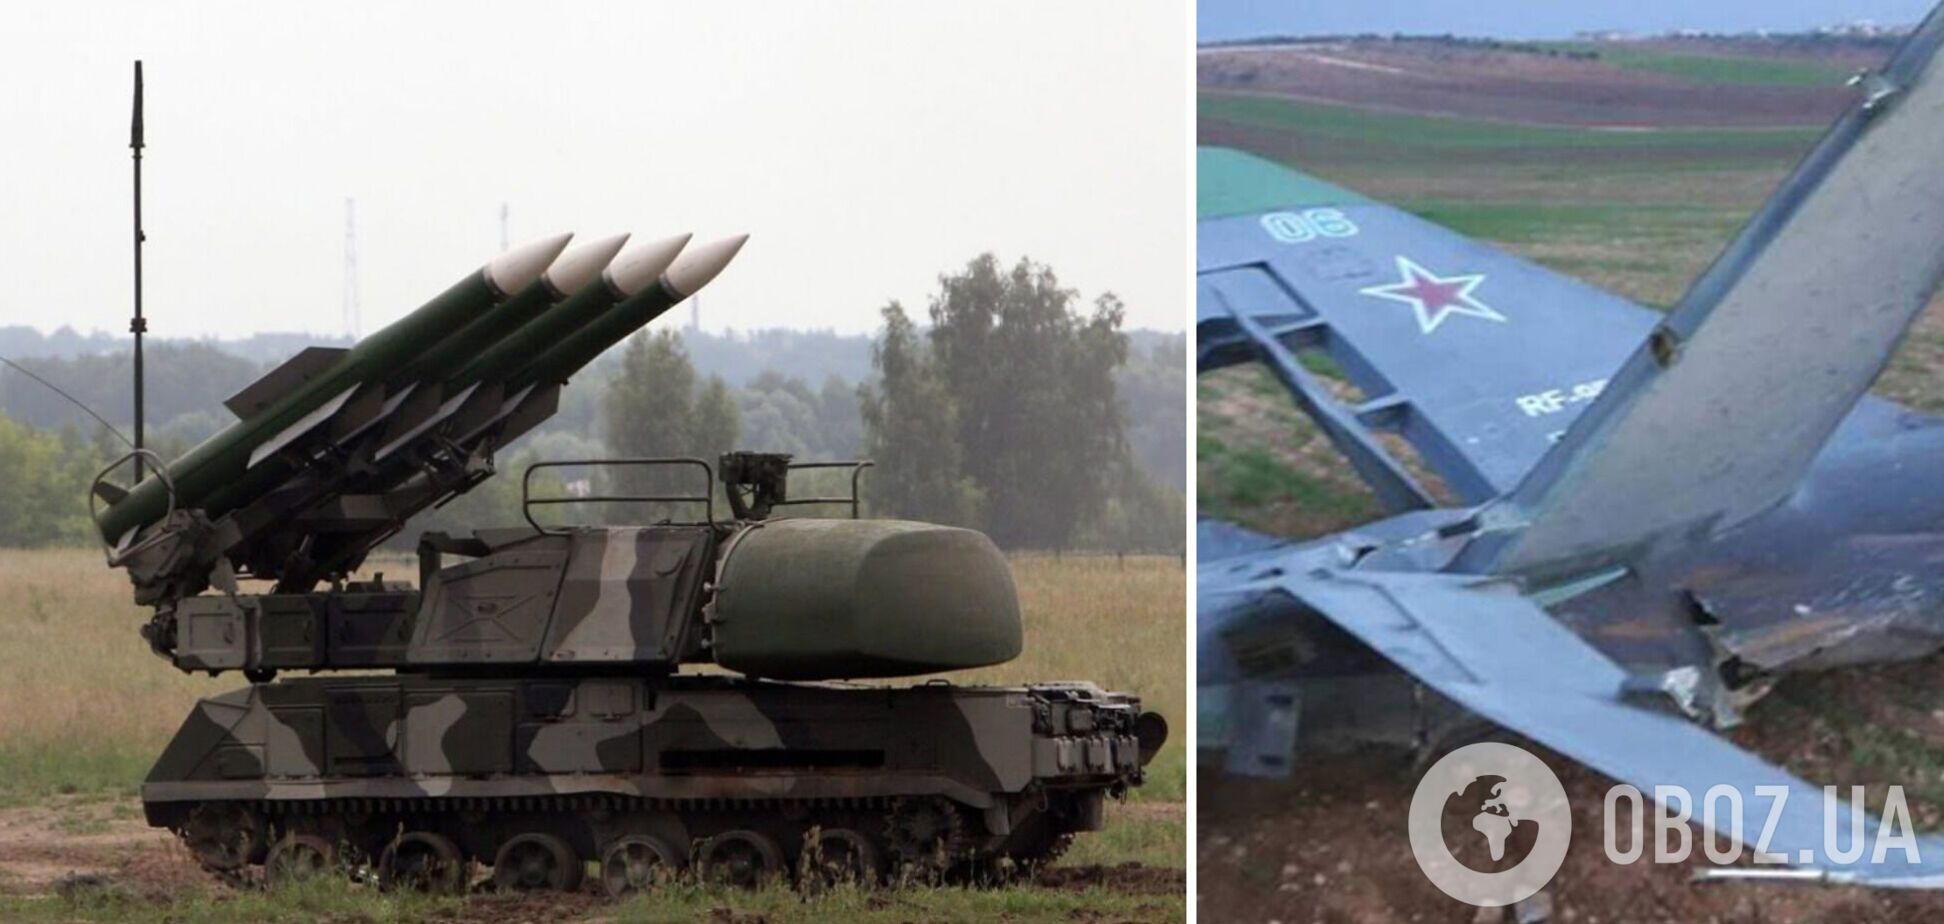 РФ так и не смогла уничтожить системы ПВО Украины, ее войска утратили способность к наступлению – британская разведка